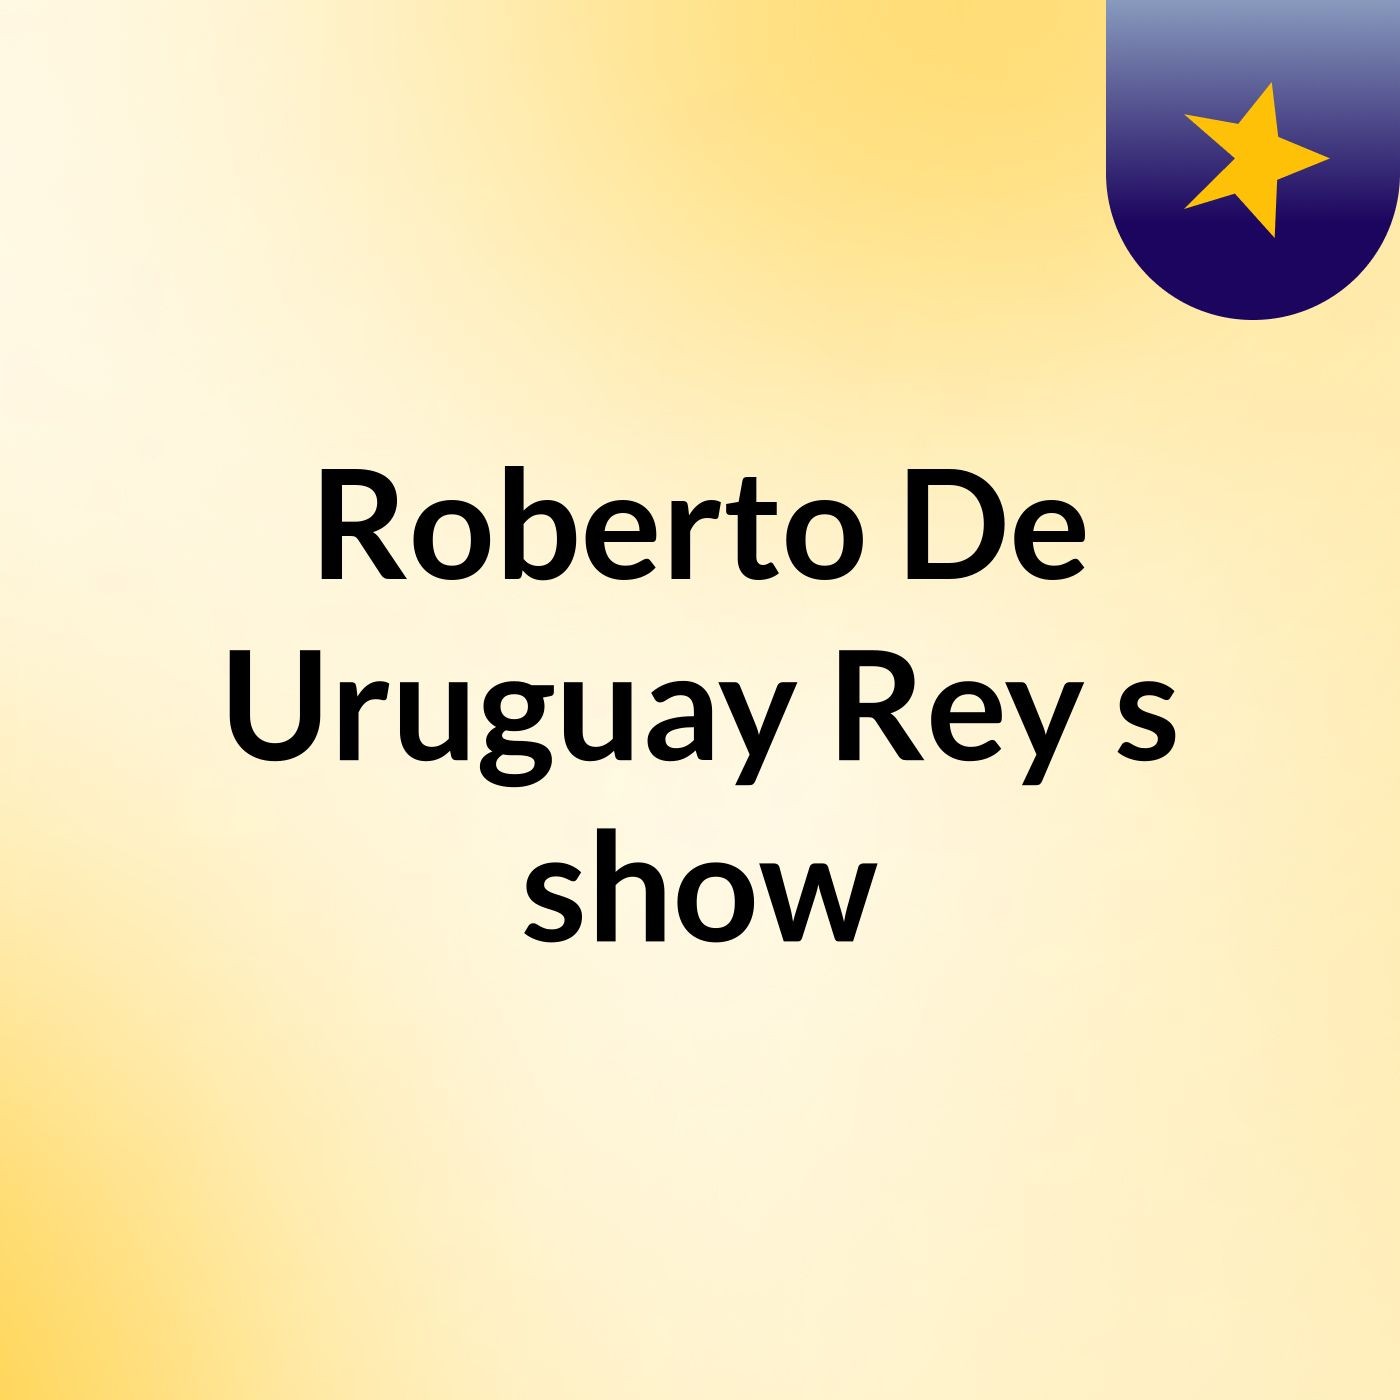 Roberto De Uruguay Rey's show